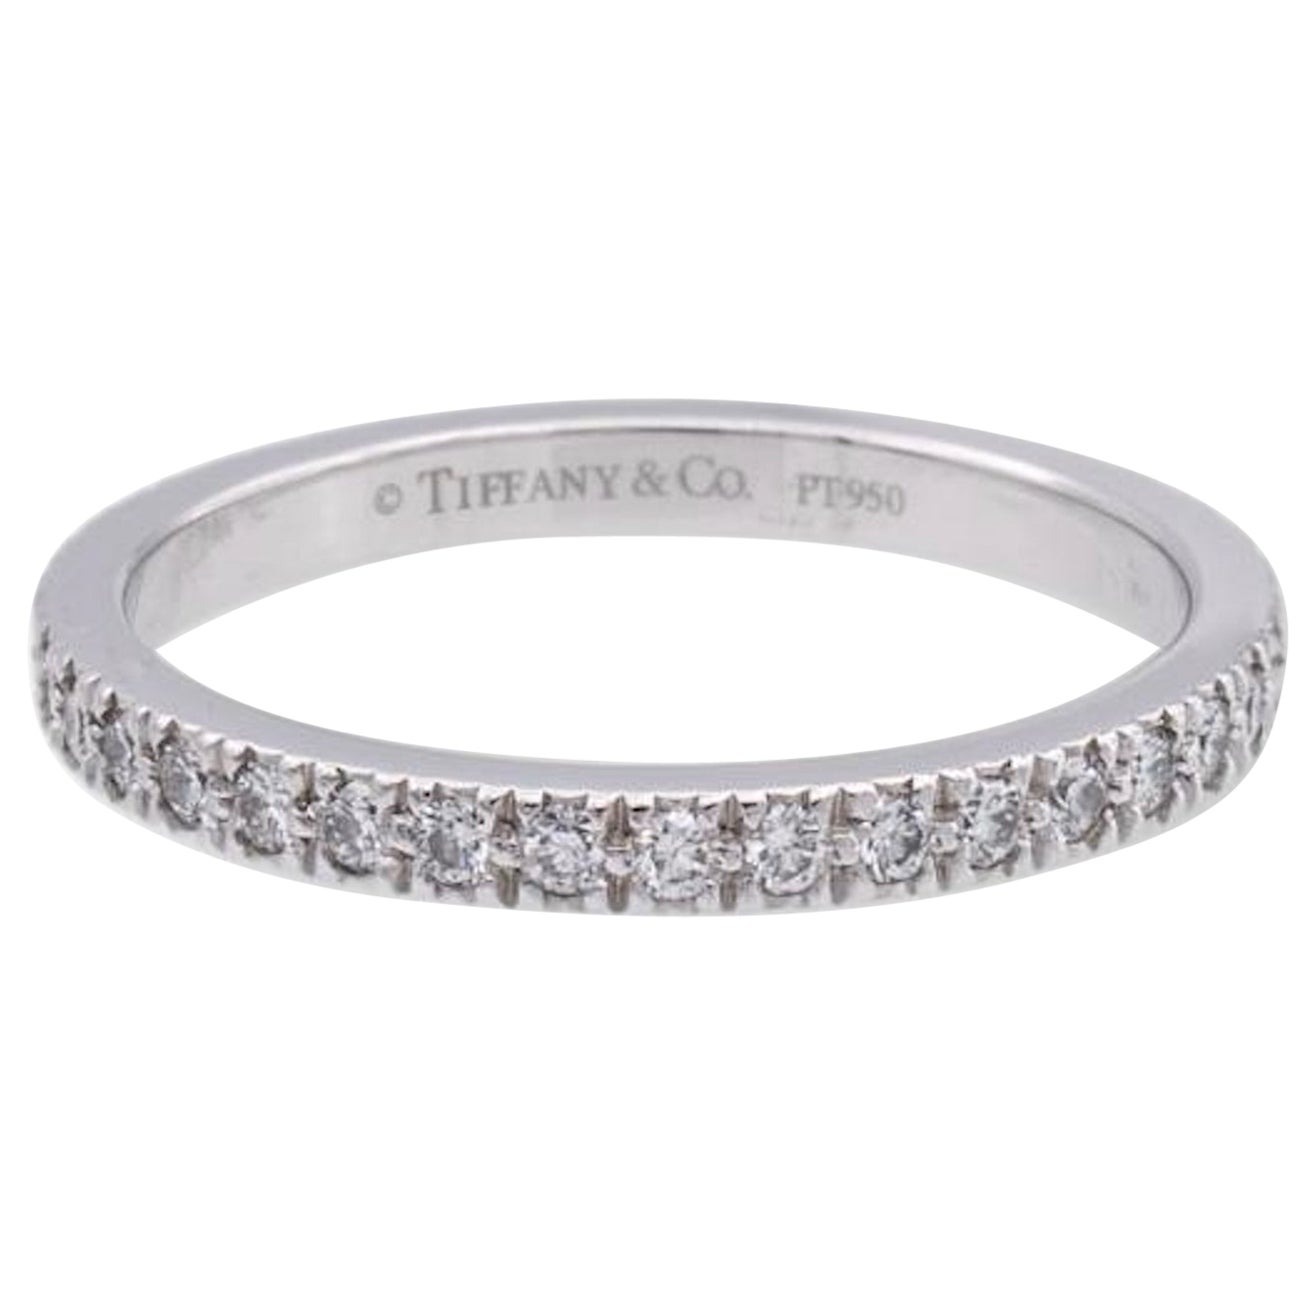 Tiffany & Co. Platinum Novo 0.36 Carats Total Full Circle Band Ring Size 5